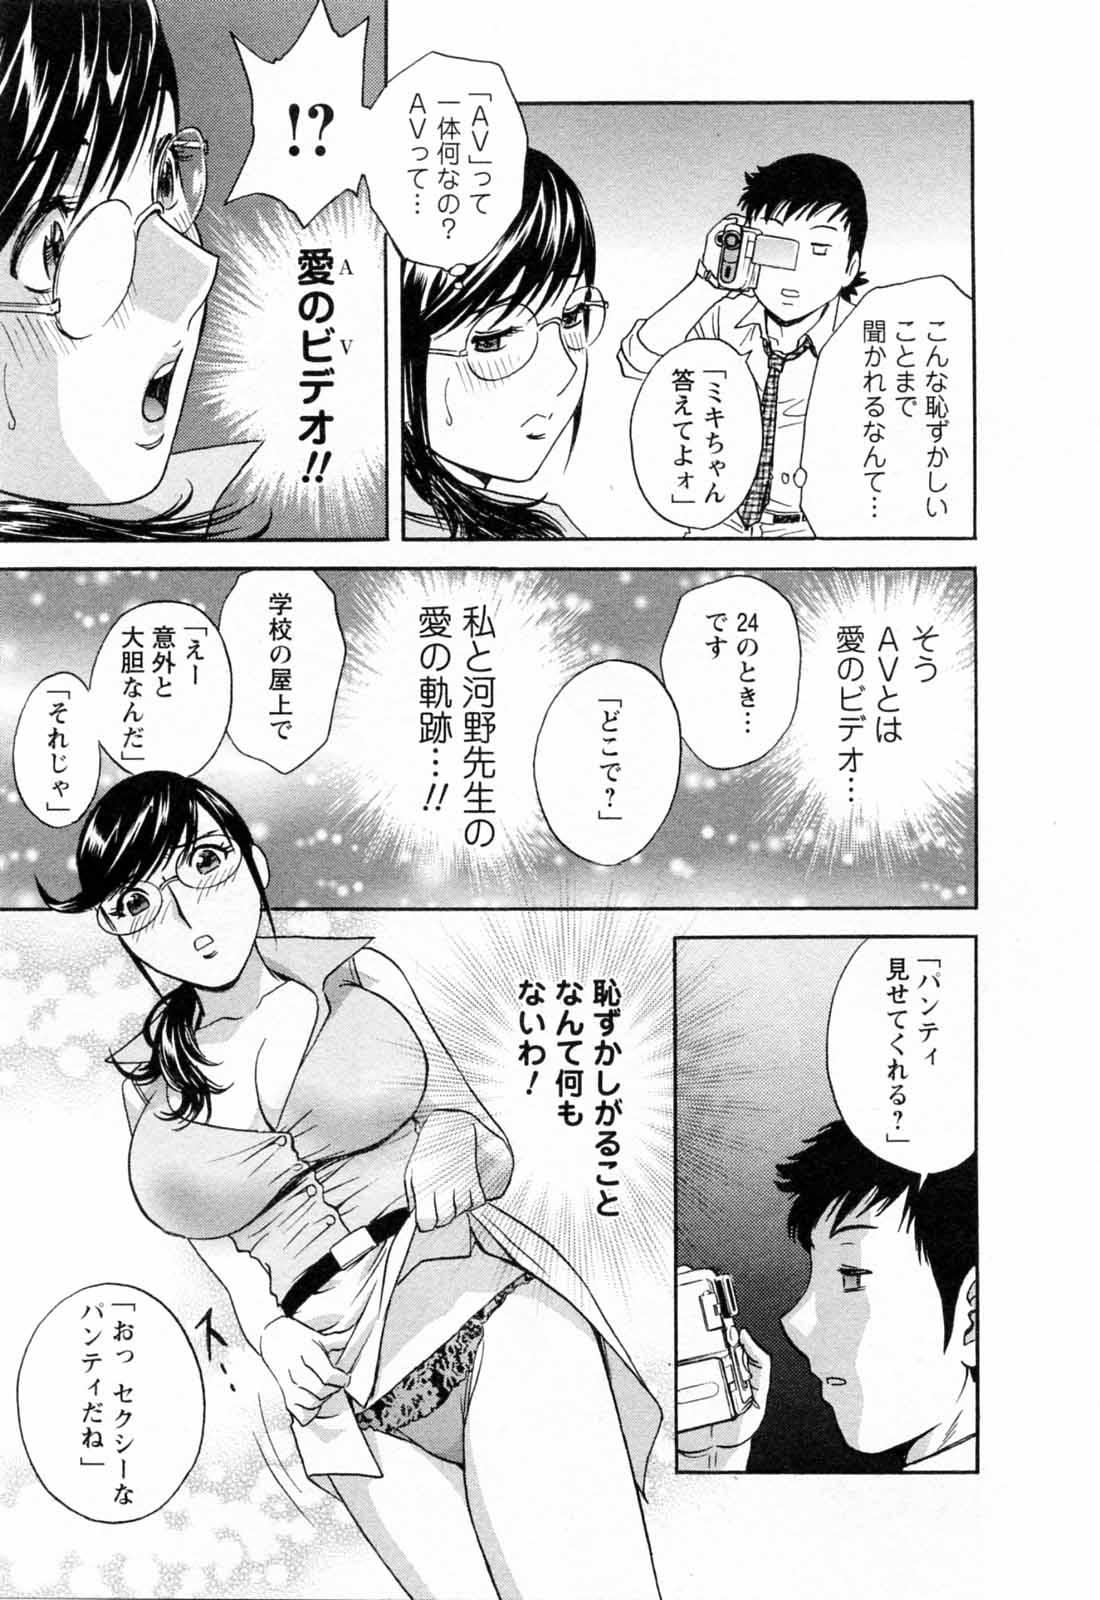 [Hidemaru] Mo-Retsu! Boin Sensei (Boing Boing Teacher) Vol.5 102